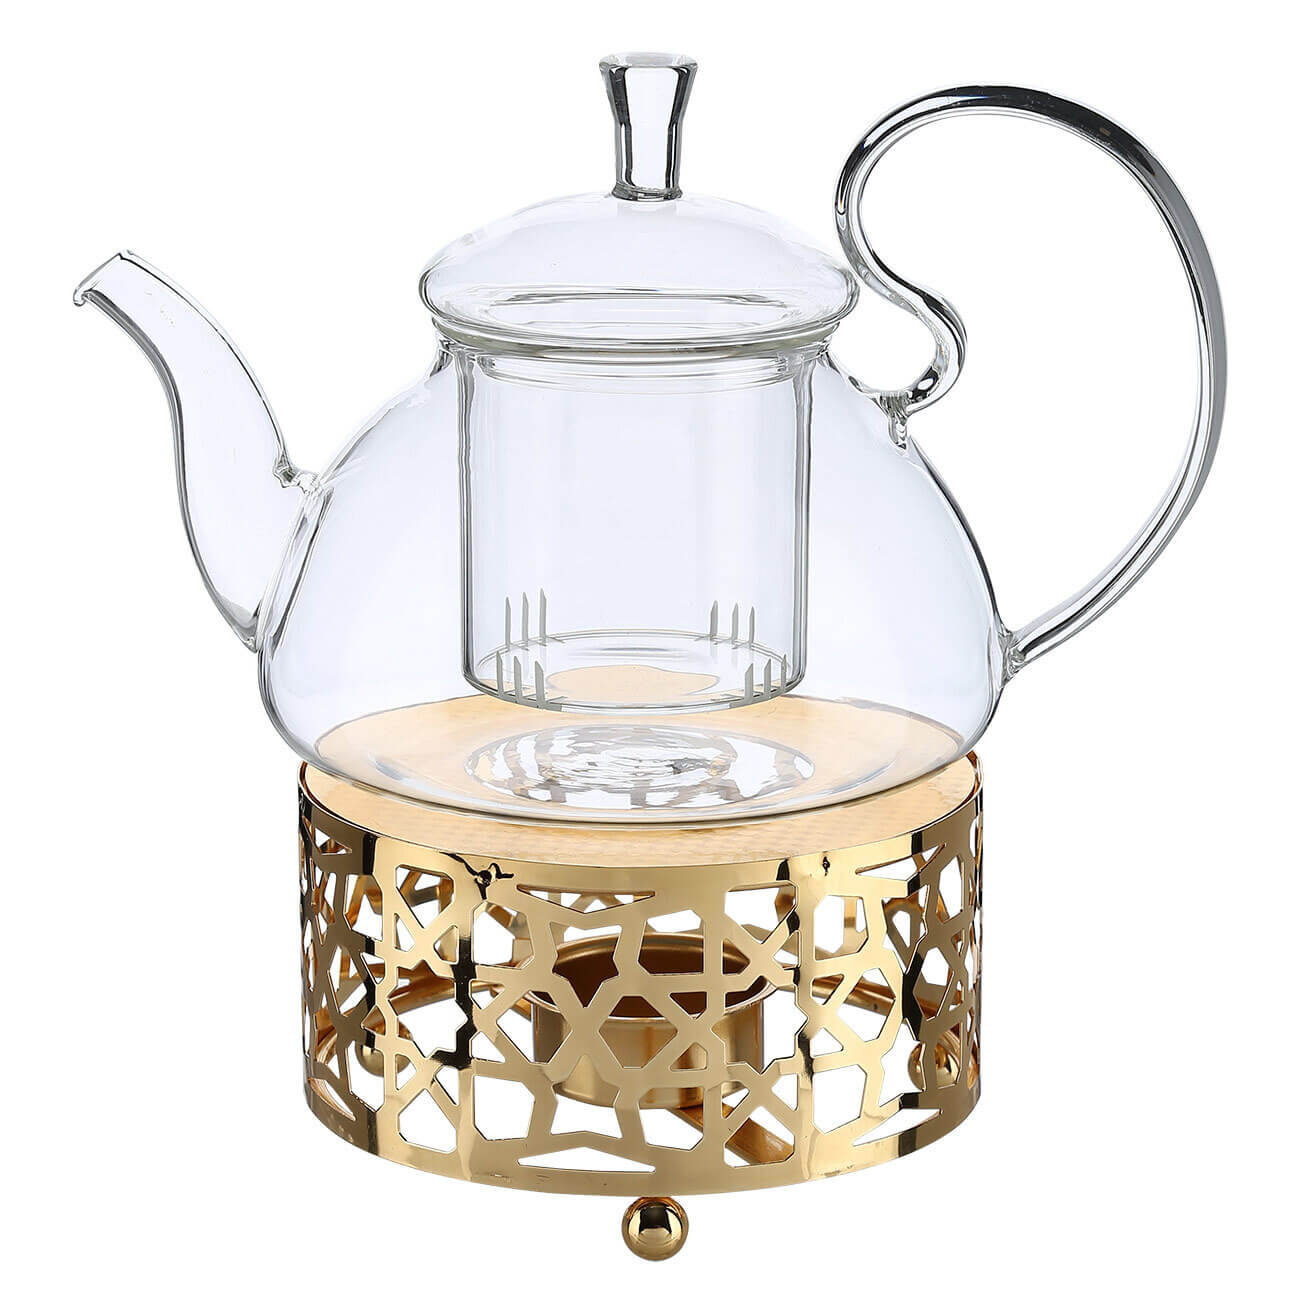 Чайник заварочный, 800 мл, с подогревом, стекло Б/металл, золотистый, Ellan kuchenland чайник заварочный 1 л стекло б дерево bell